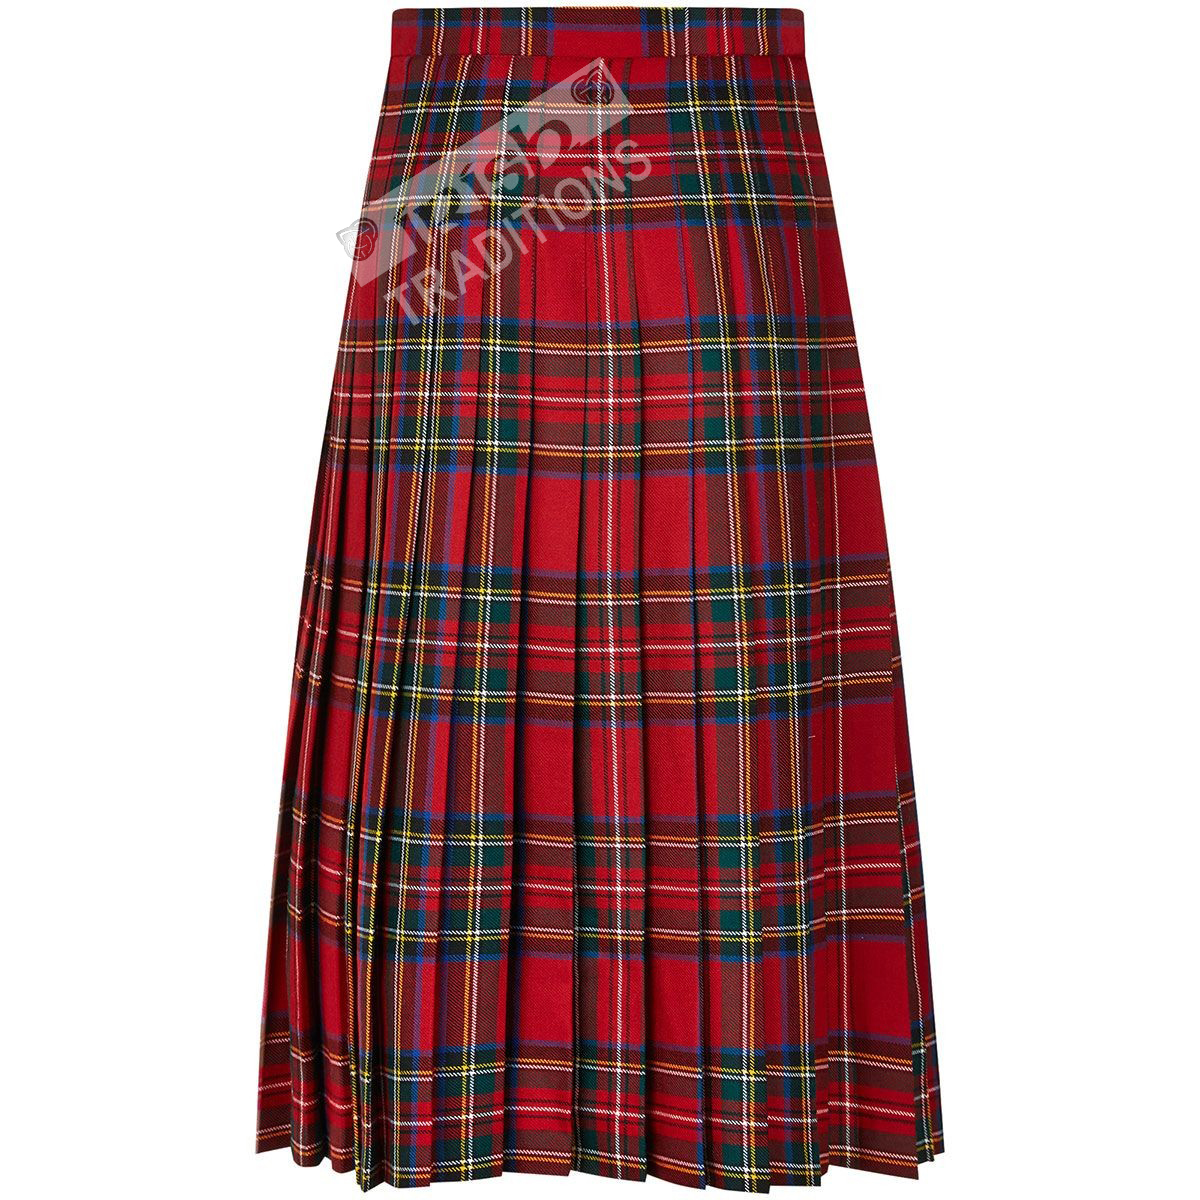 New Ladies Scottish 20" Knee Length Kilt Mod Skirt Range of Tartans Size 6-18 